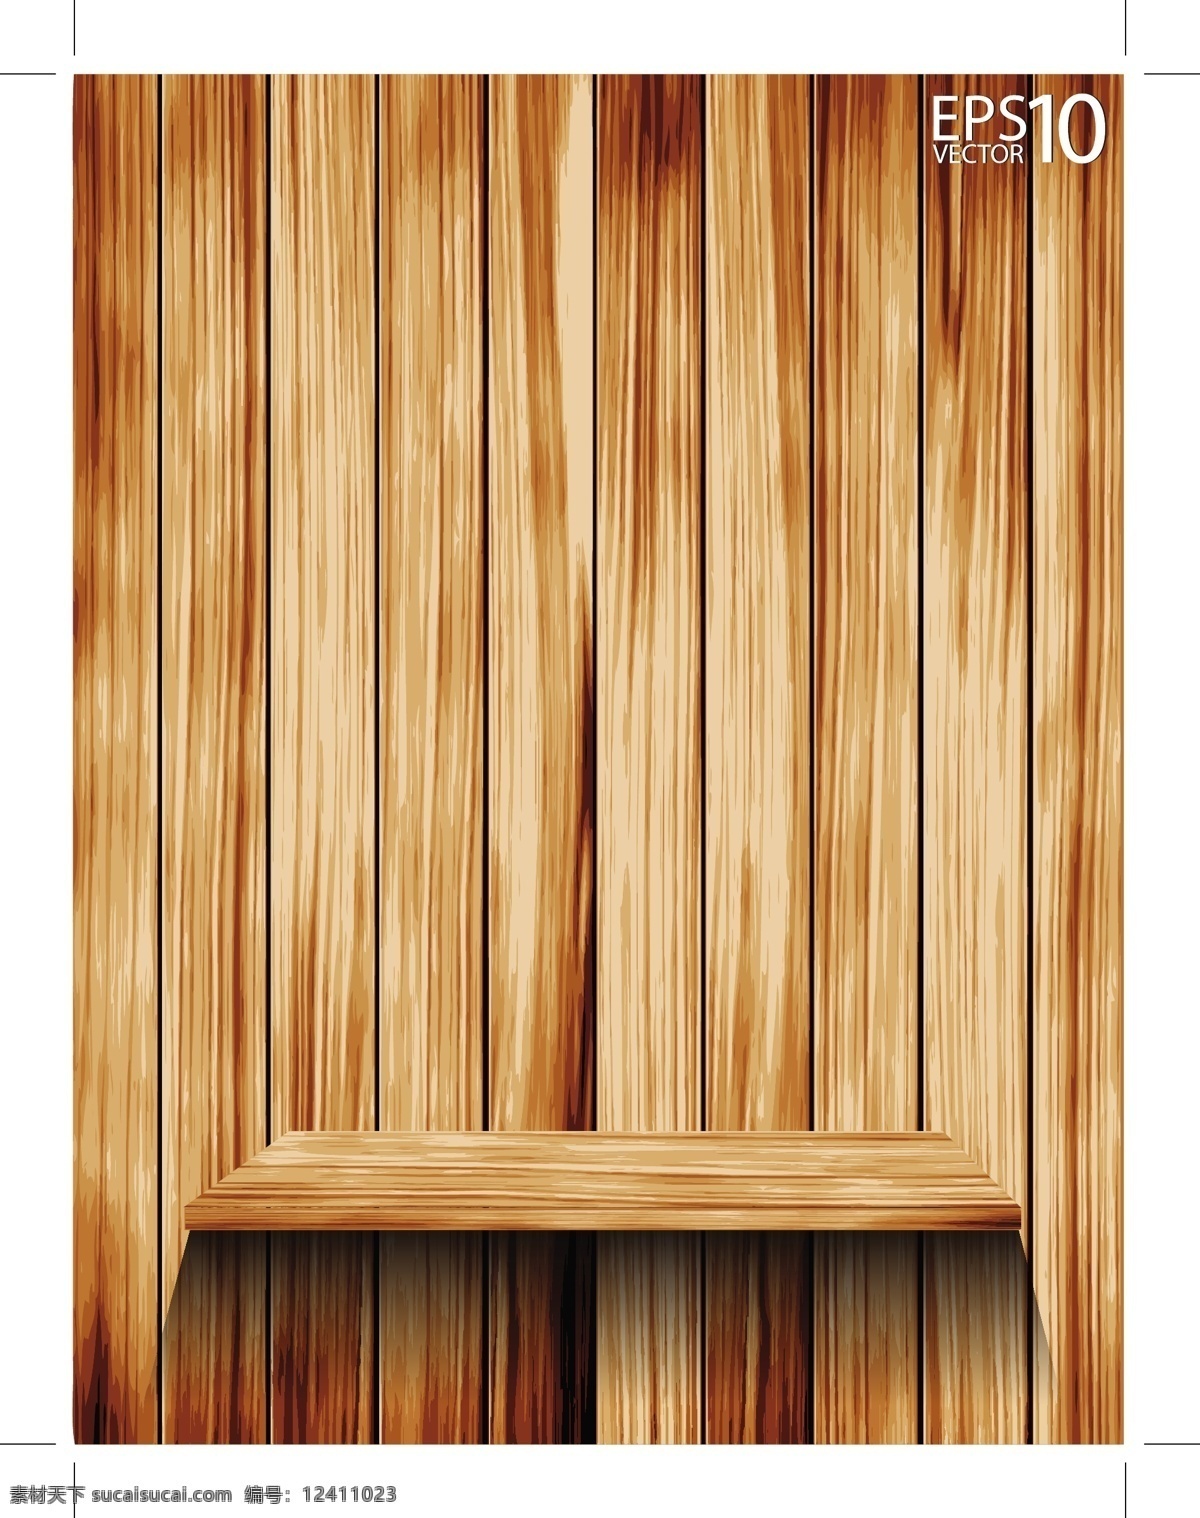 木板 矢量 二 背景 格式 柜子 木头 木纹 矢量素材 纹路 关键字 psd源文件